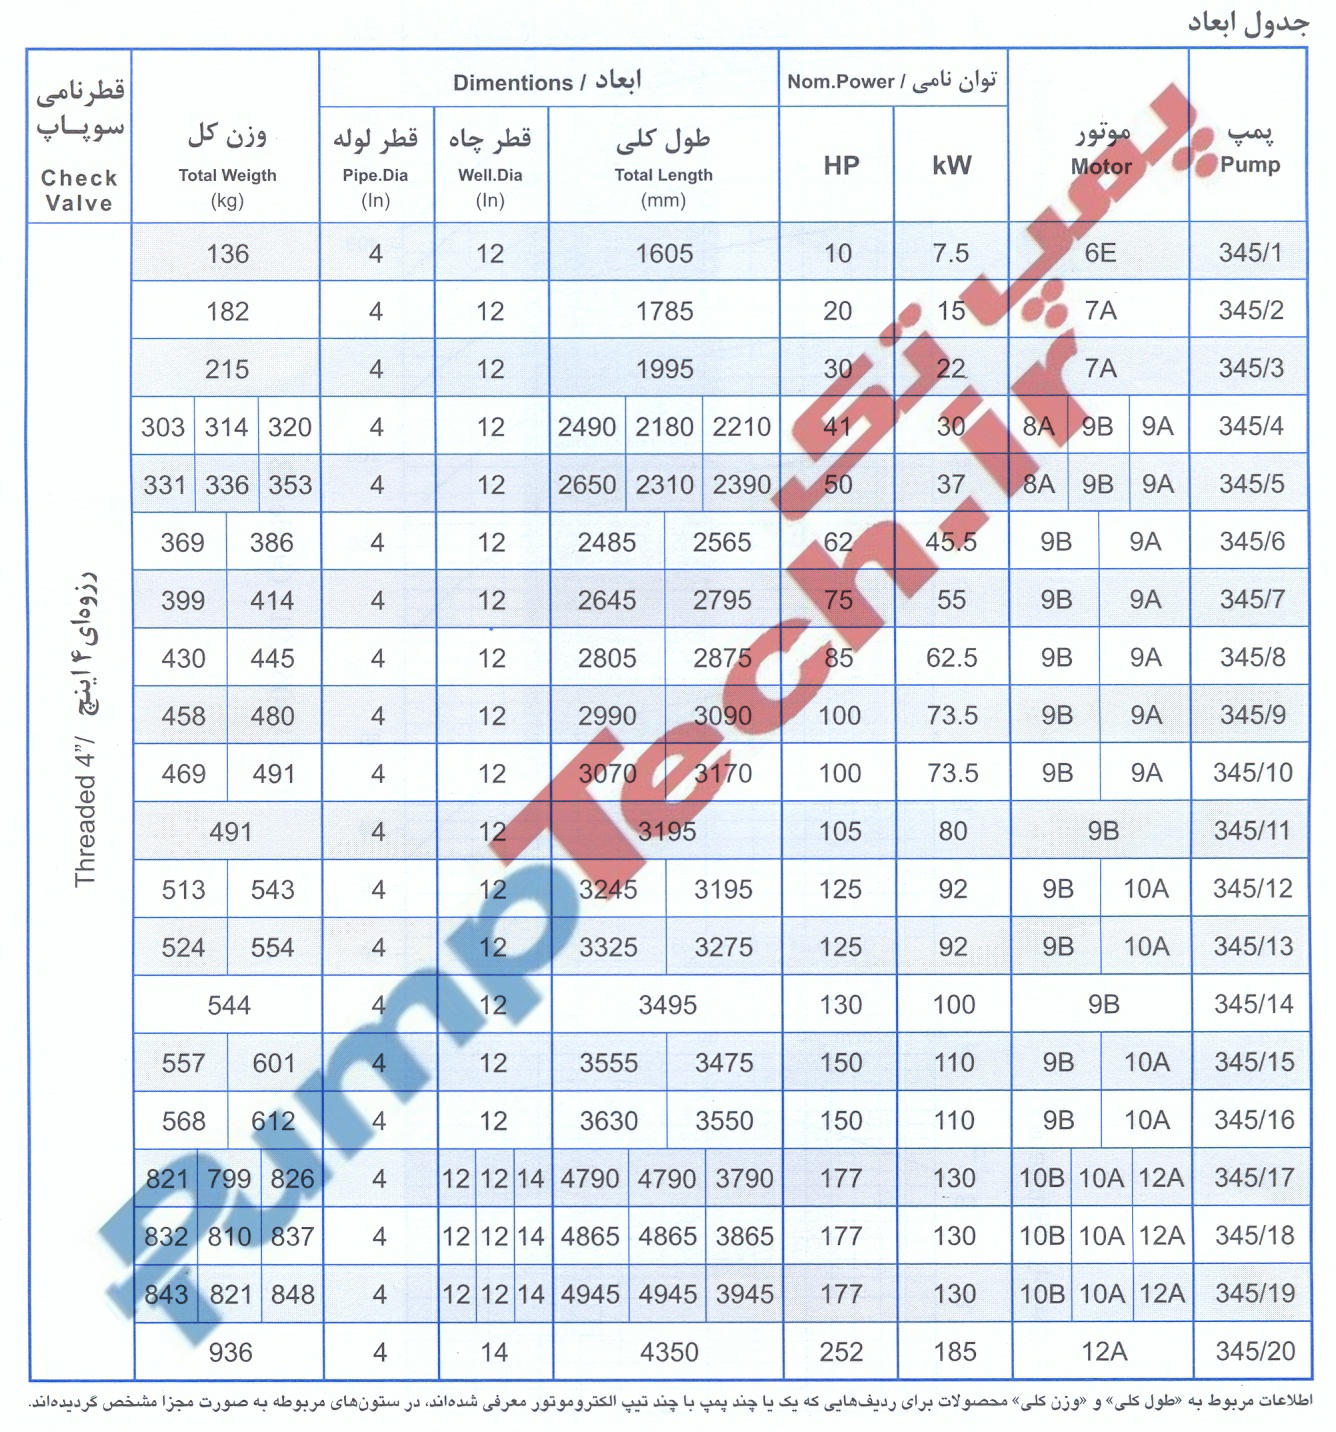 جدول ابعاد و مشخصات موتور الکتروپمپ شناور پمپیران SUBMERSIBLE MOTOR PUMPIRAN UQN 345